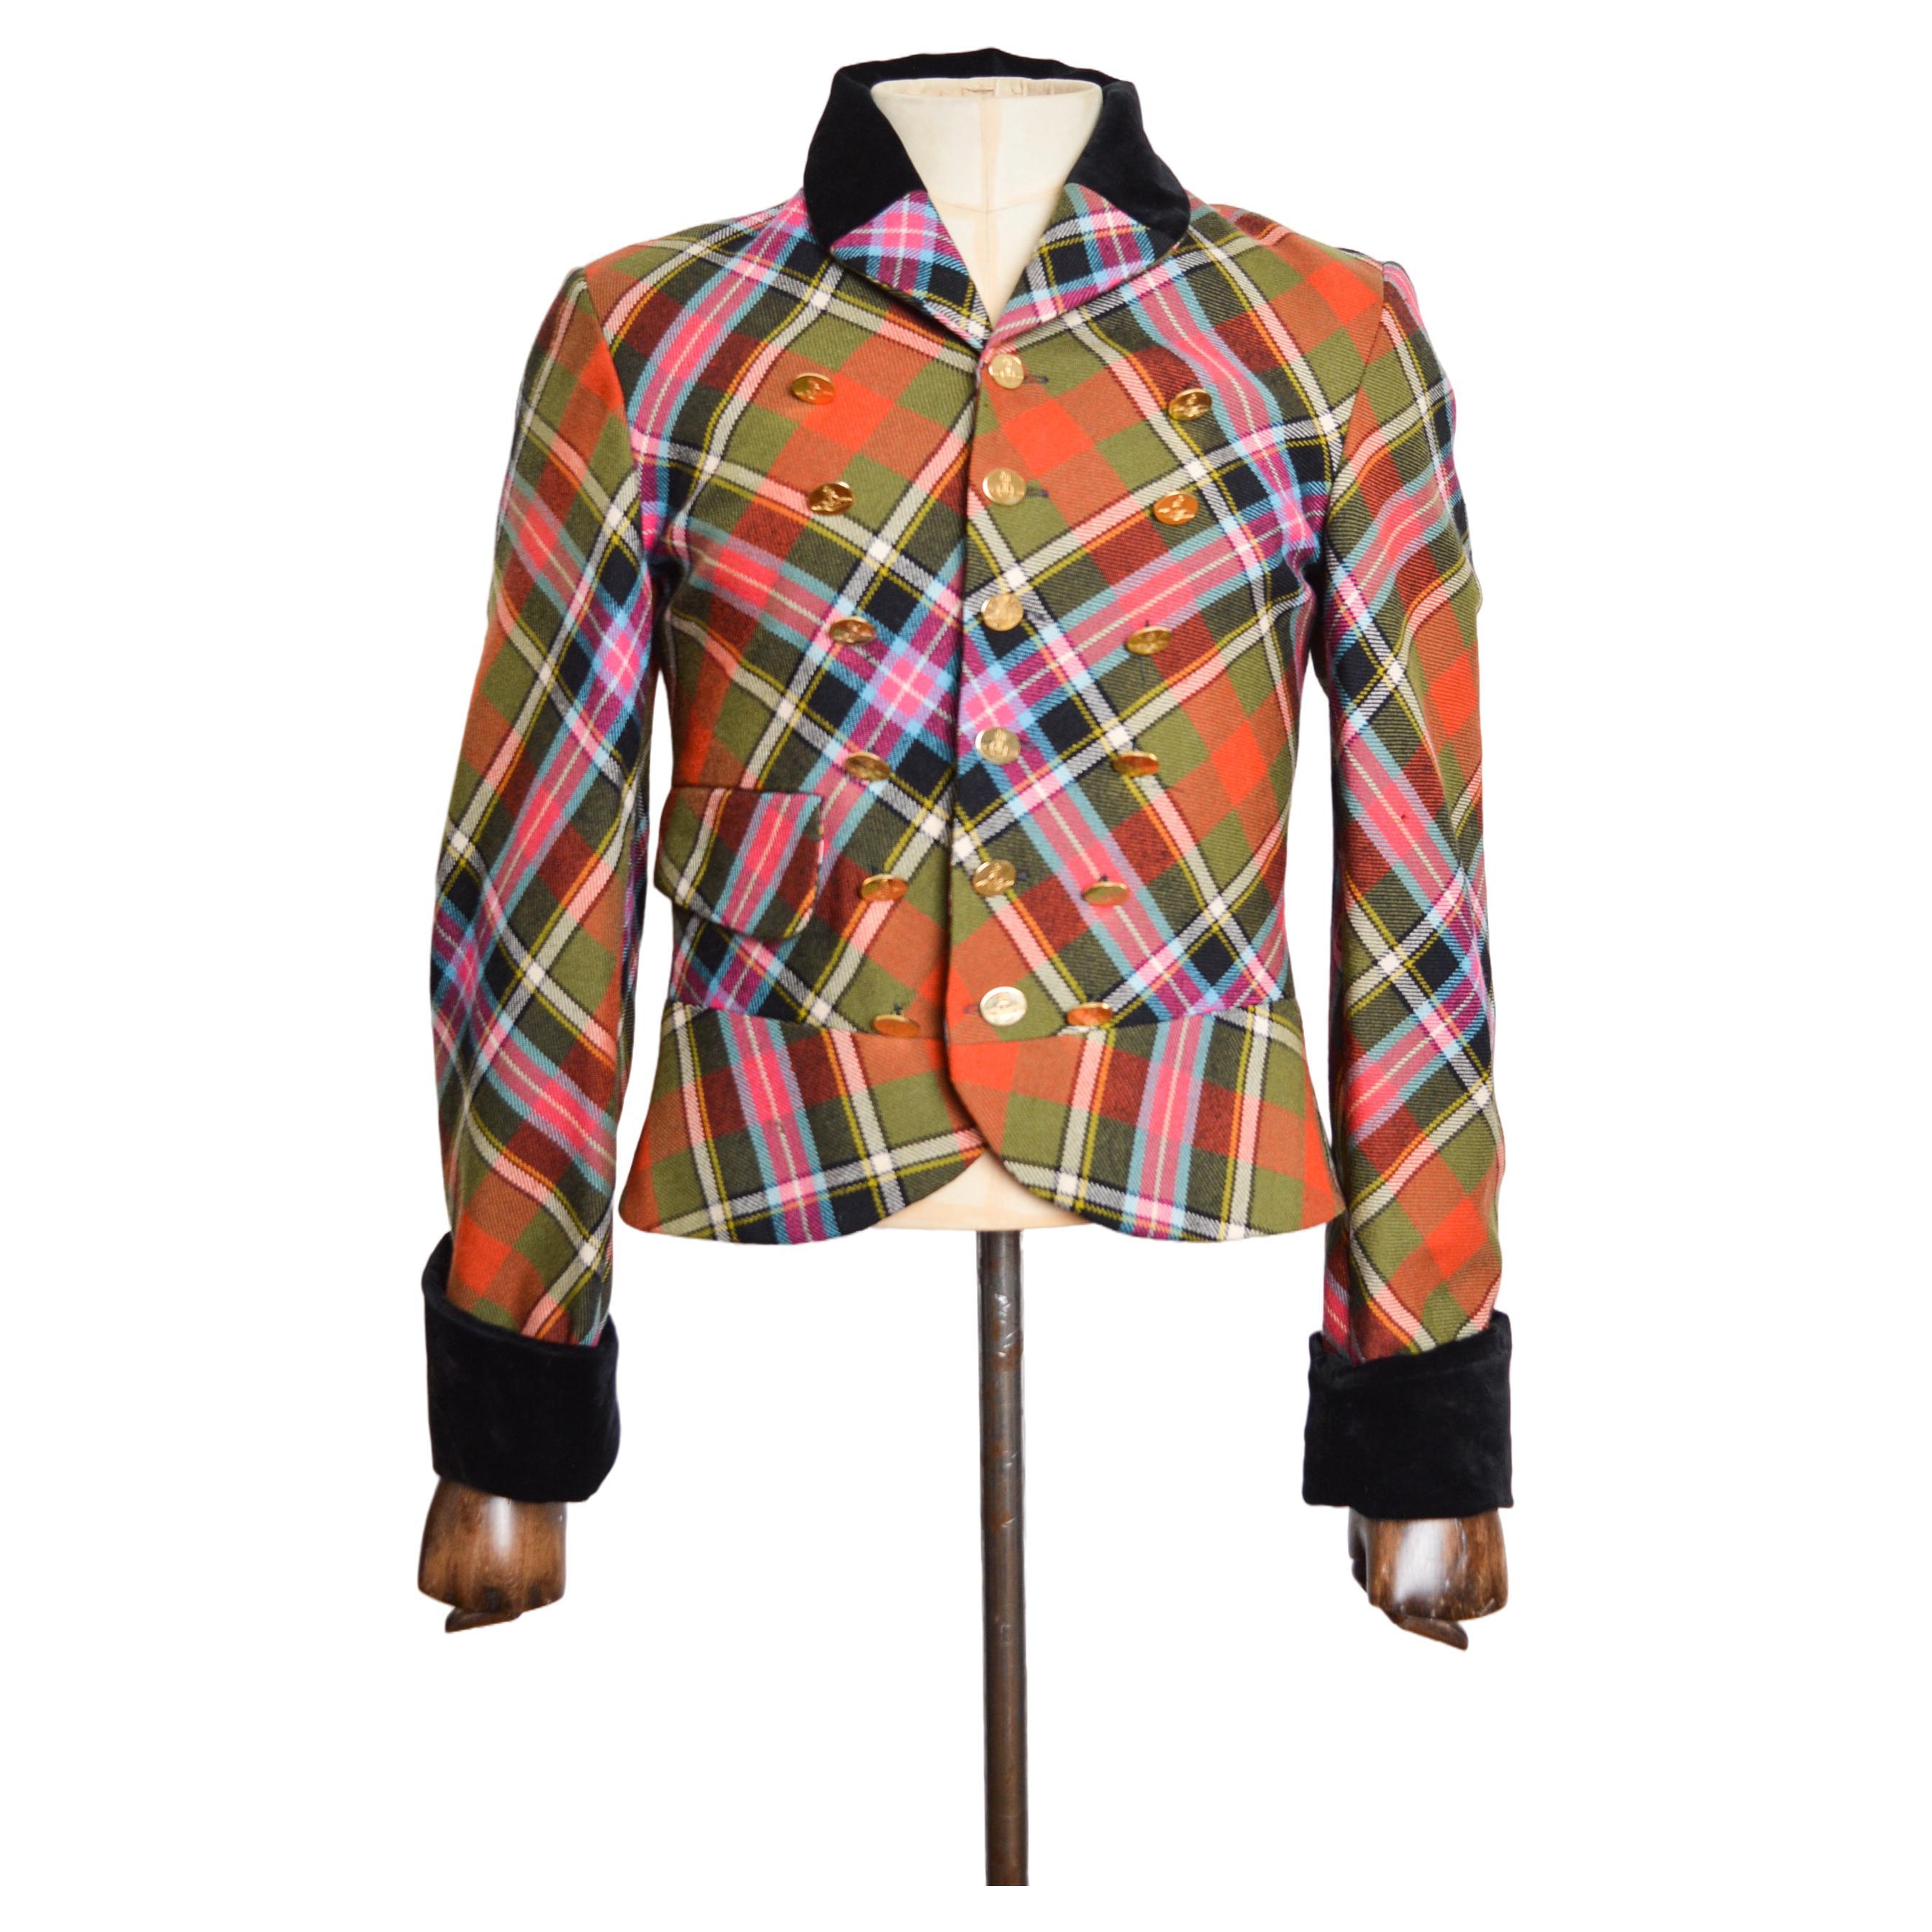 AW 1988 / 89 Vivienne Westwood Bruce of Kinnaird Tartan Mens Runway Jacket For Sale